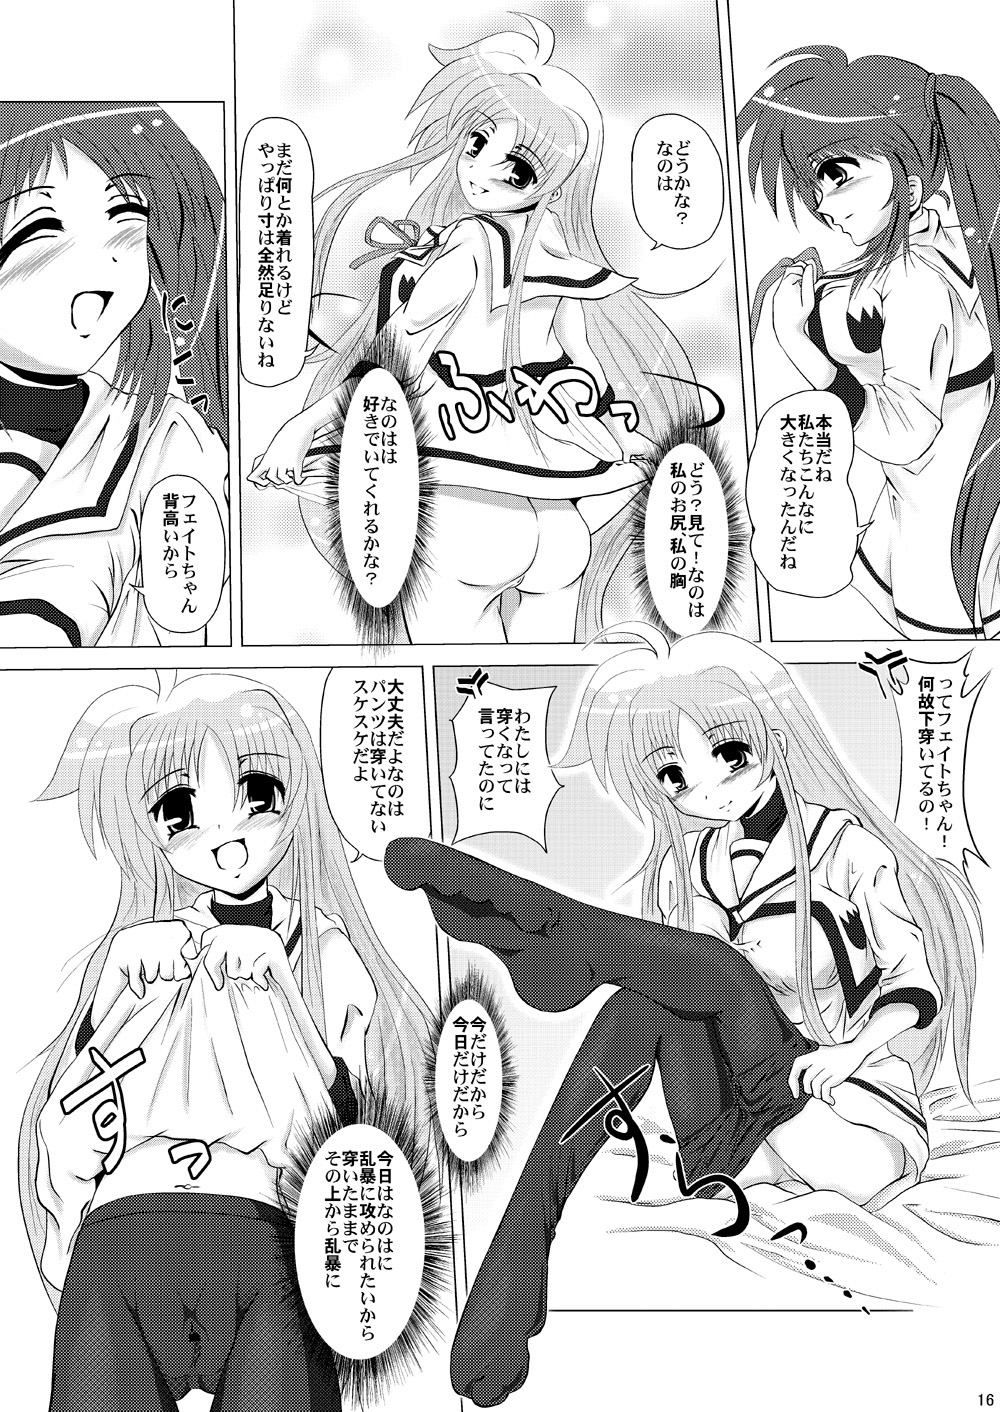 (SC35) [MajesticRune (Kurogane)] Kirameku Tsubasa ni Omoi wo Hasete Todoku to Iina, Watashi no Yuuki (Magical Girl Lyrical Nanoha) page 15 full